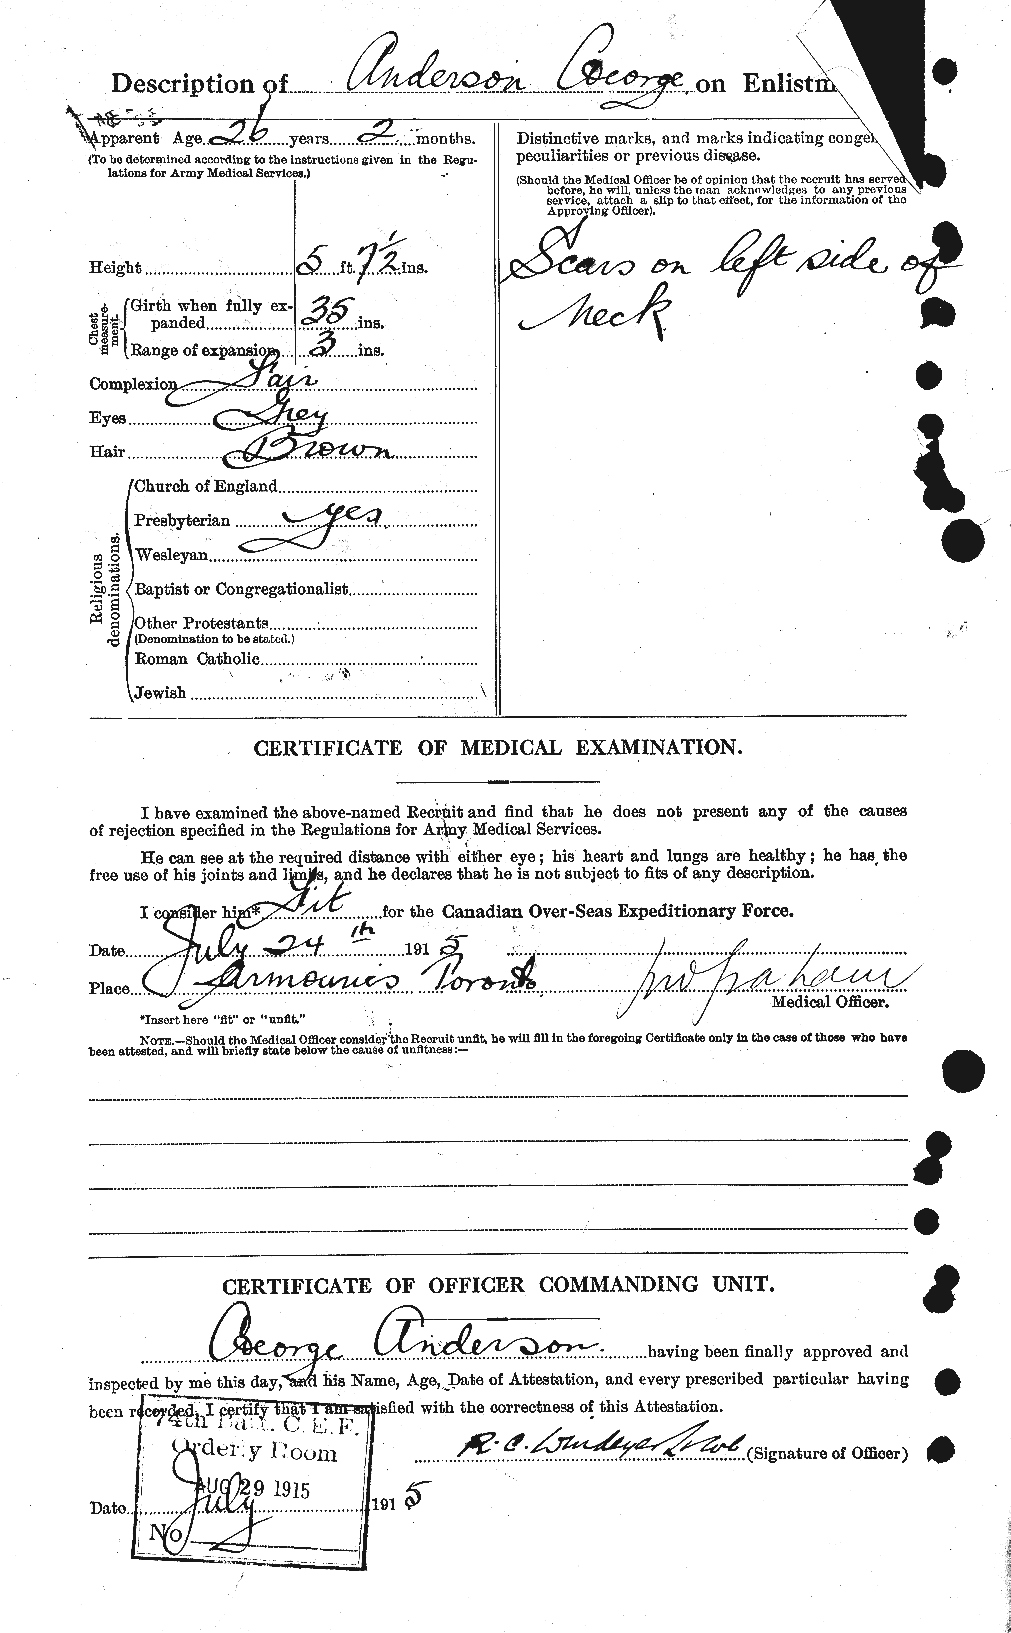 Dossiers du Personnel de la Première Guerre mondiale - CEC 209759b